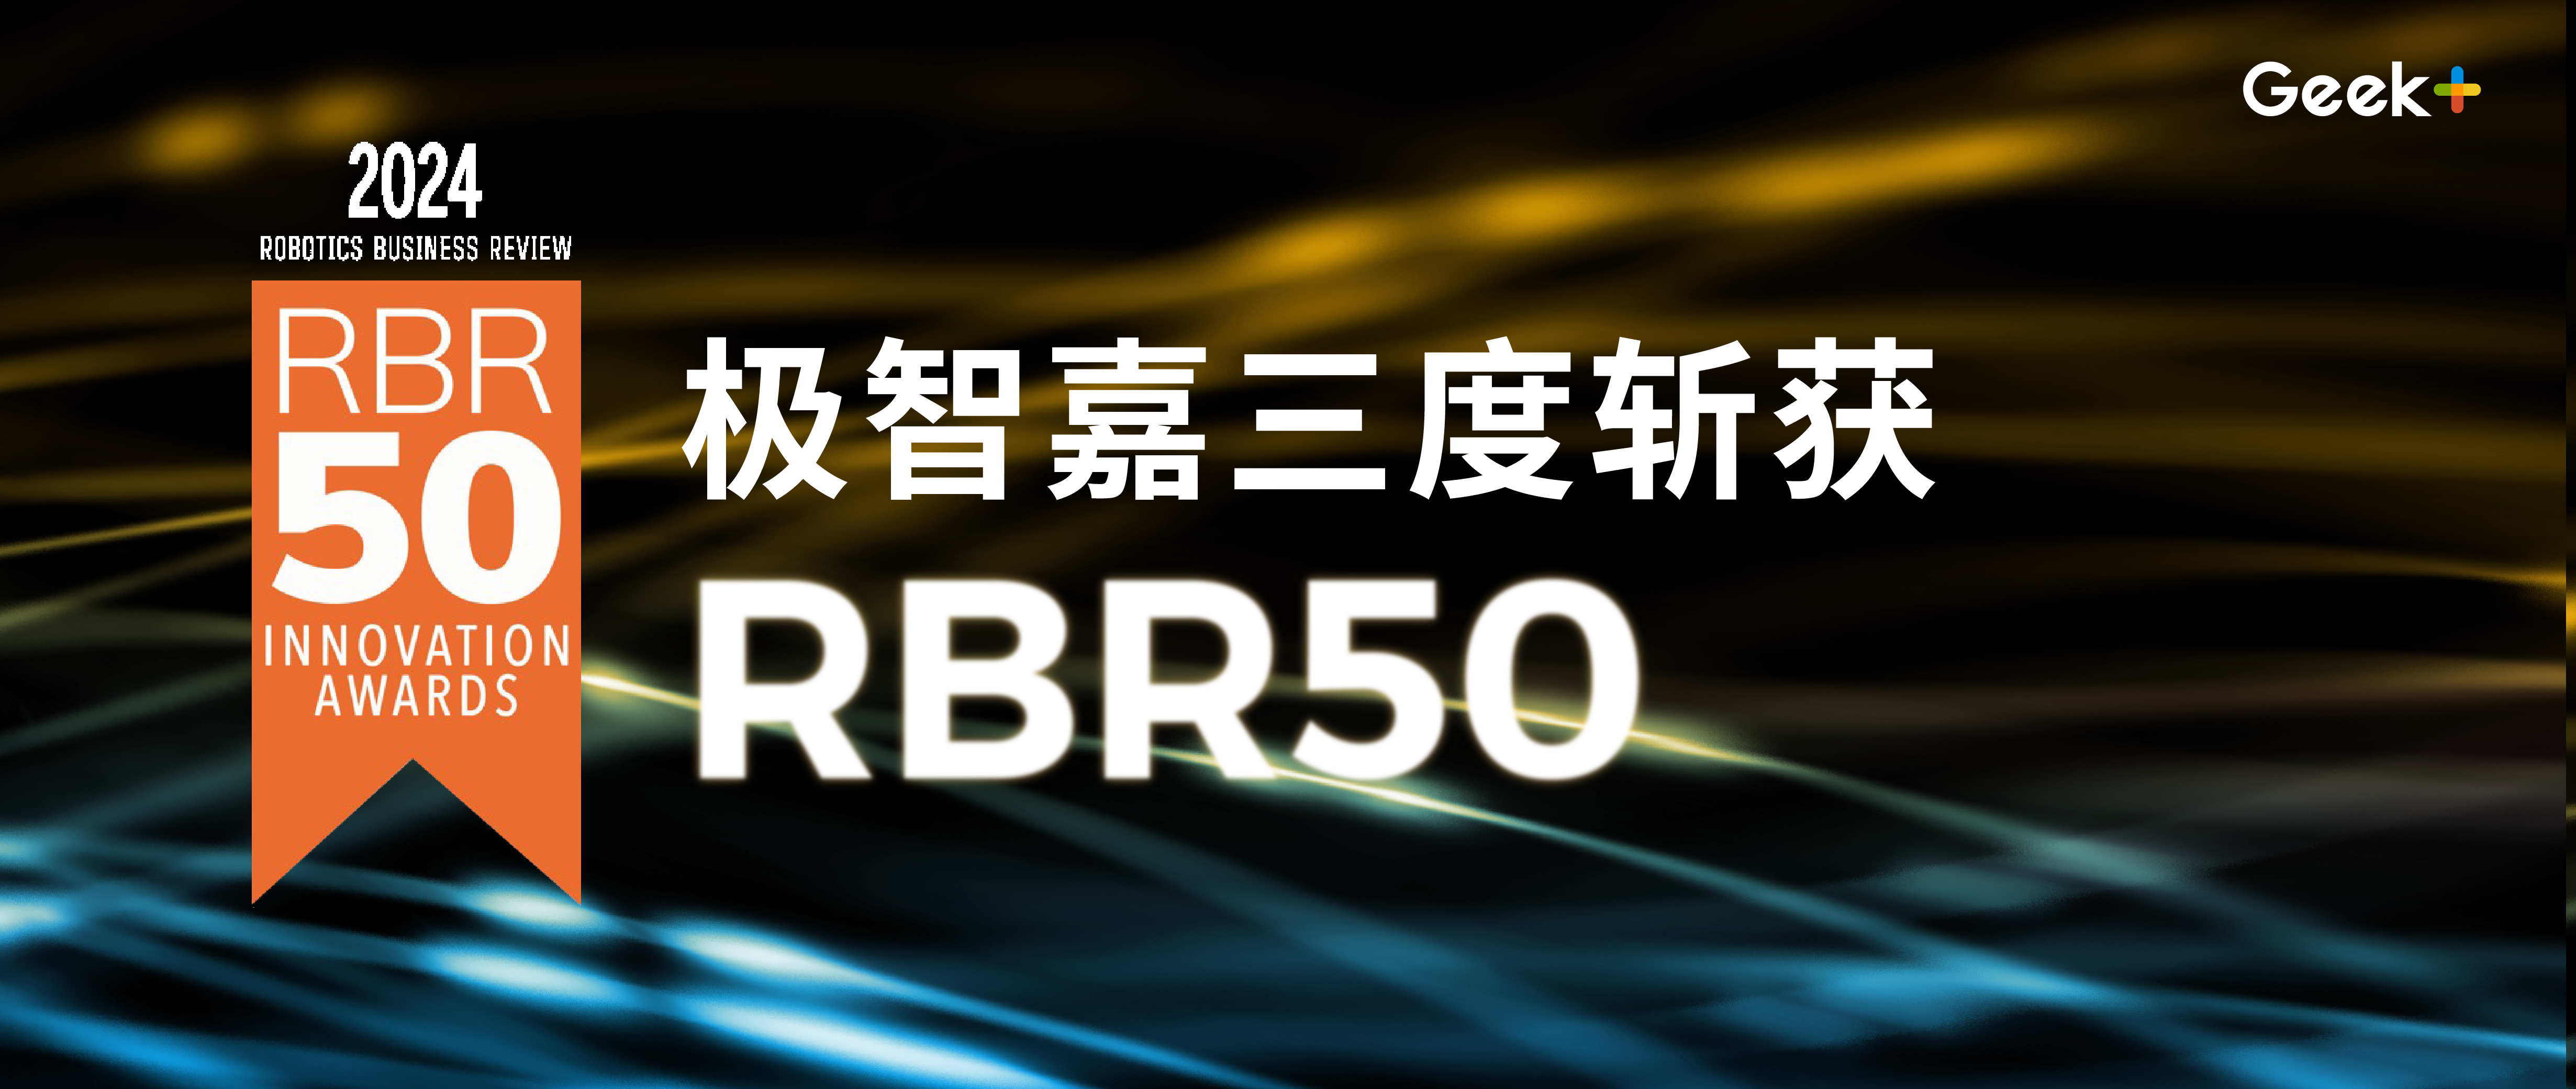 高光时刻 | 极智嘉三度斩获 “RBR50 全球机器人创新奖”